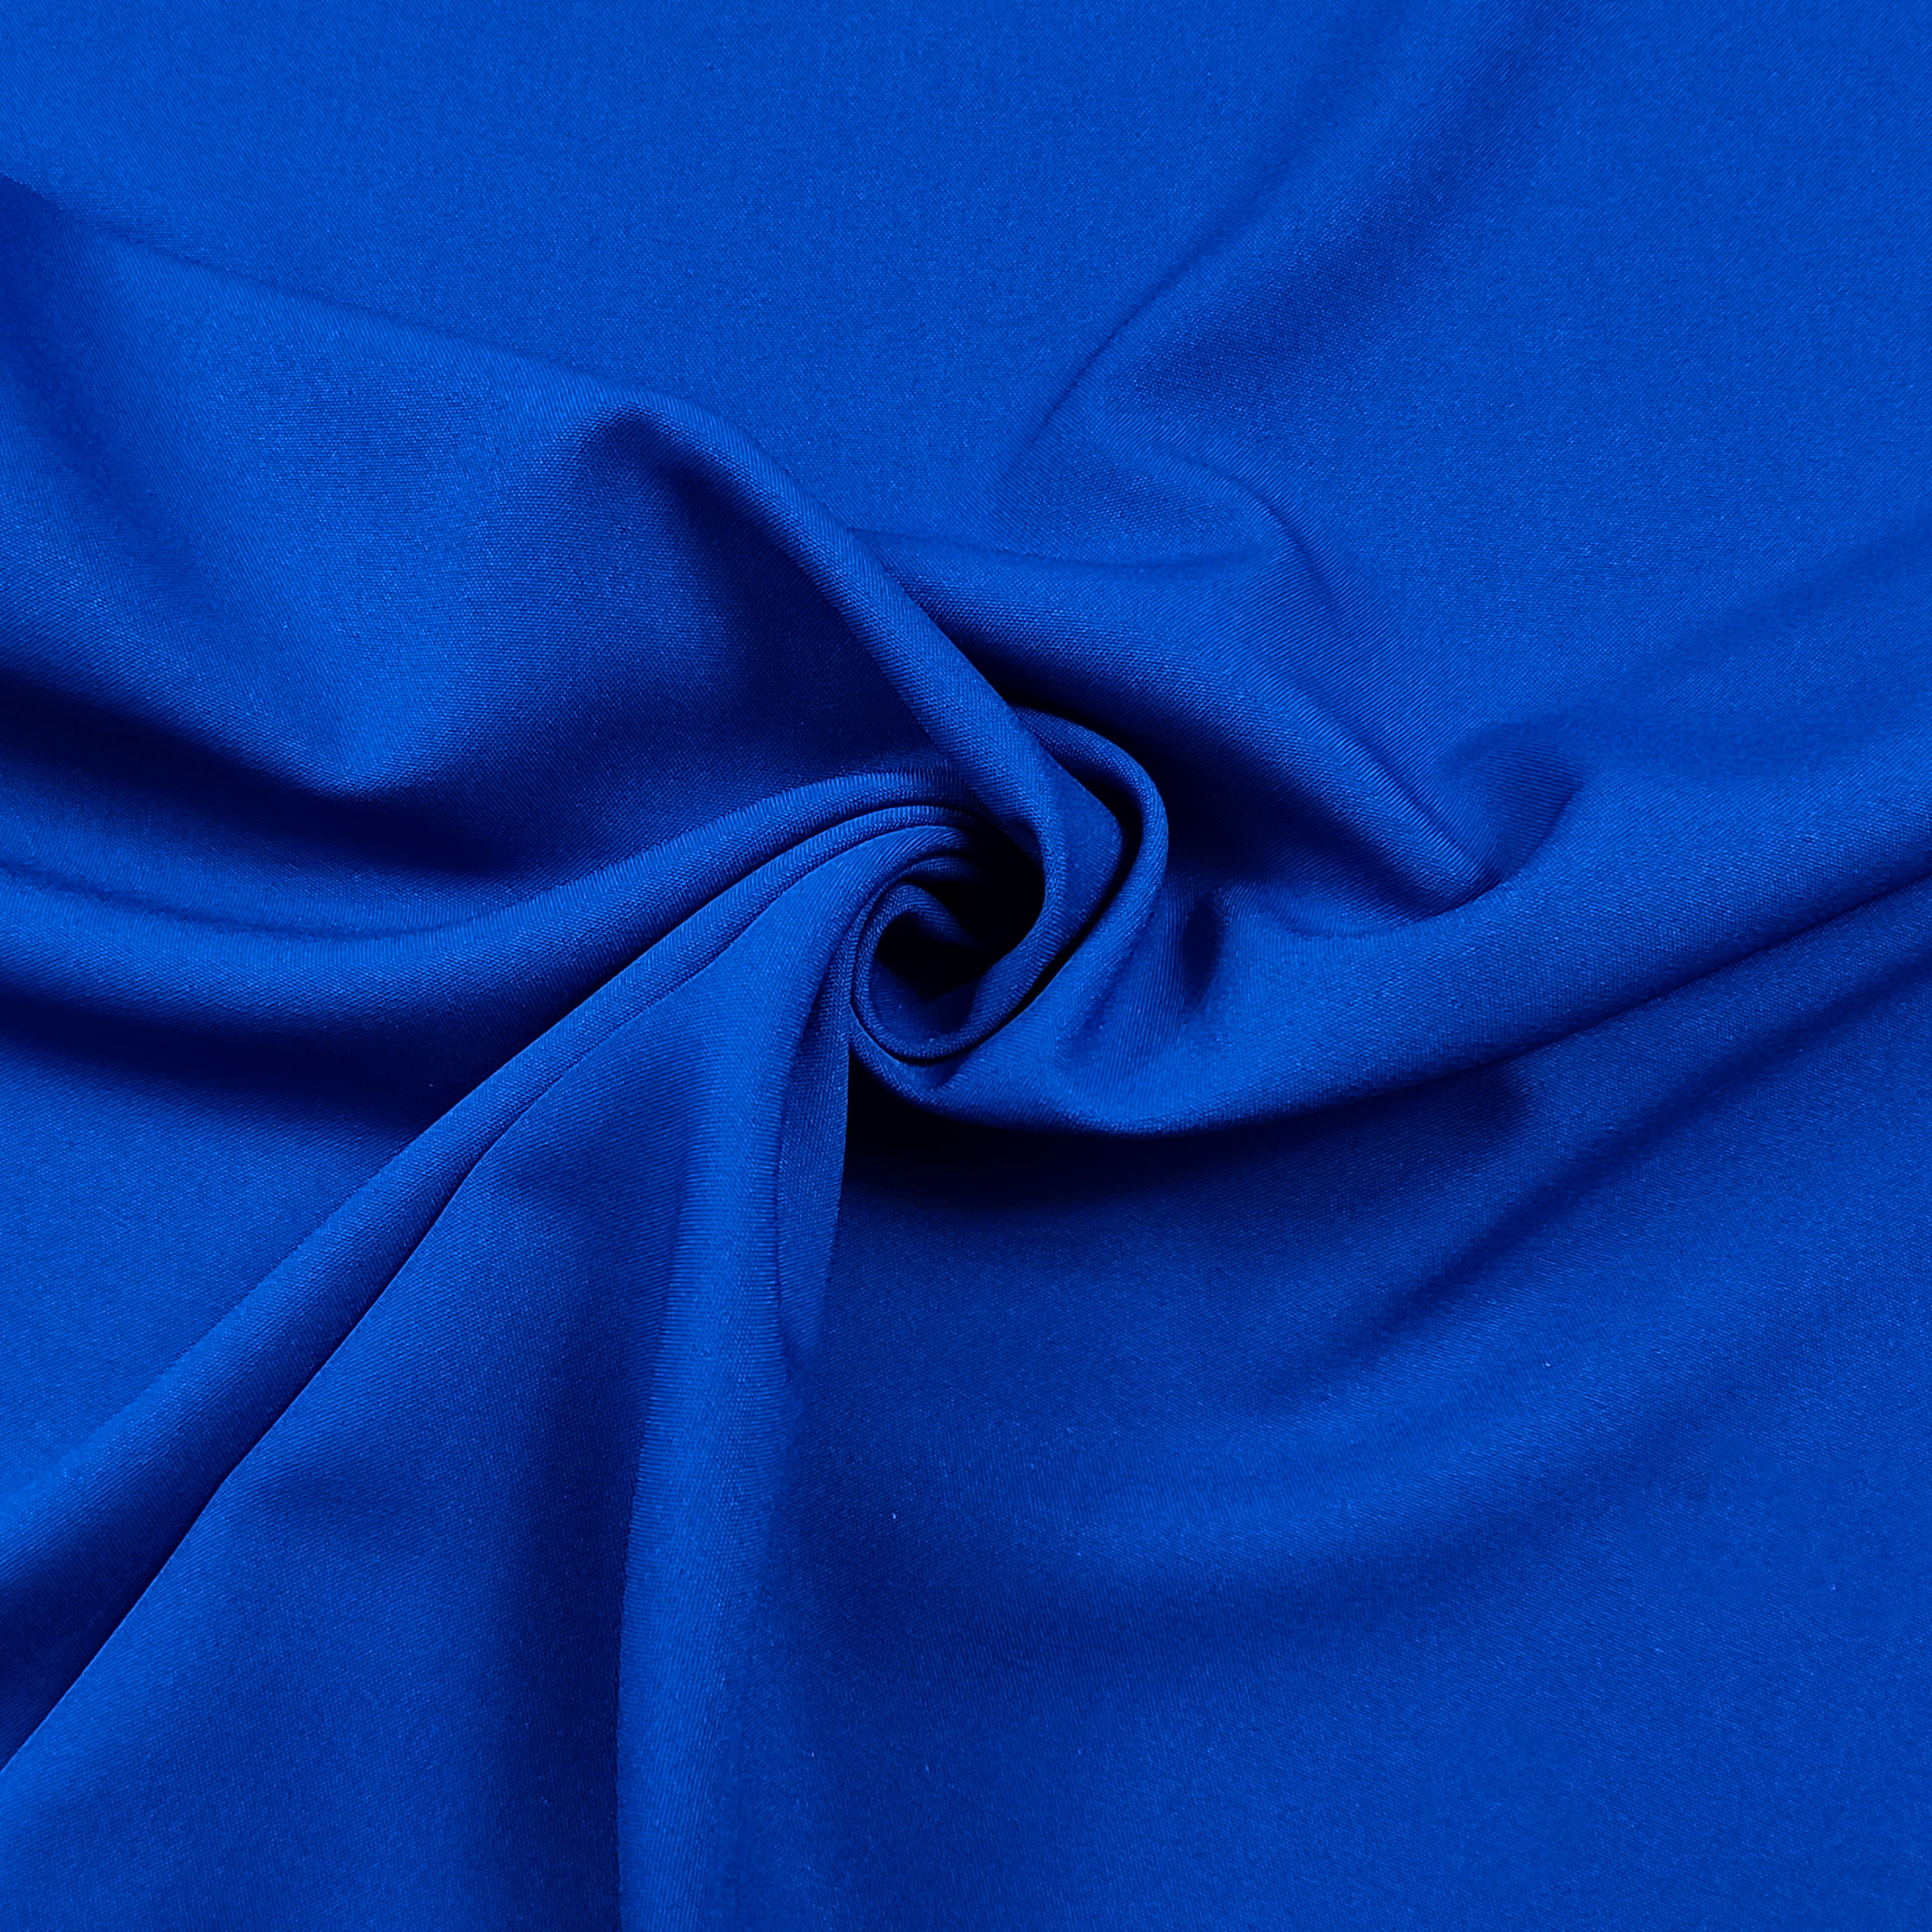 tessuto per abbigliamento bluette